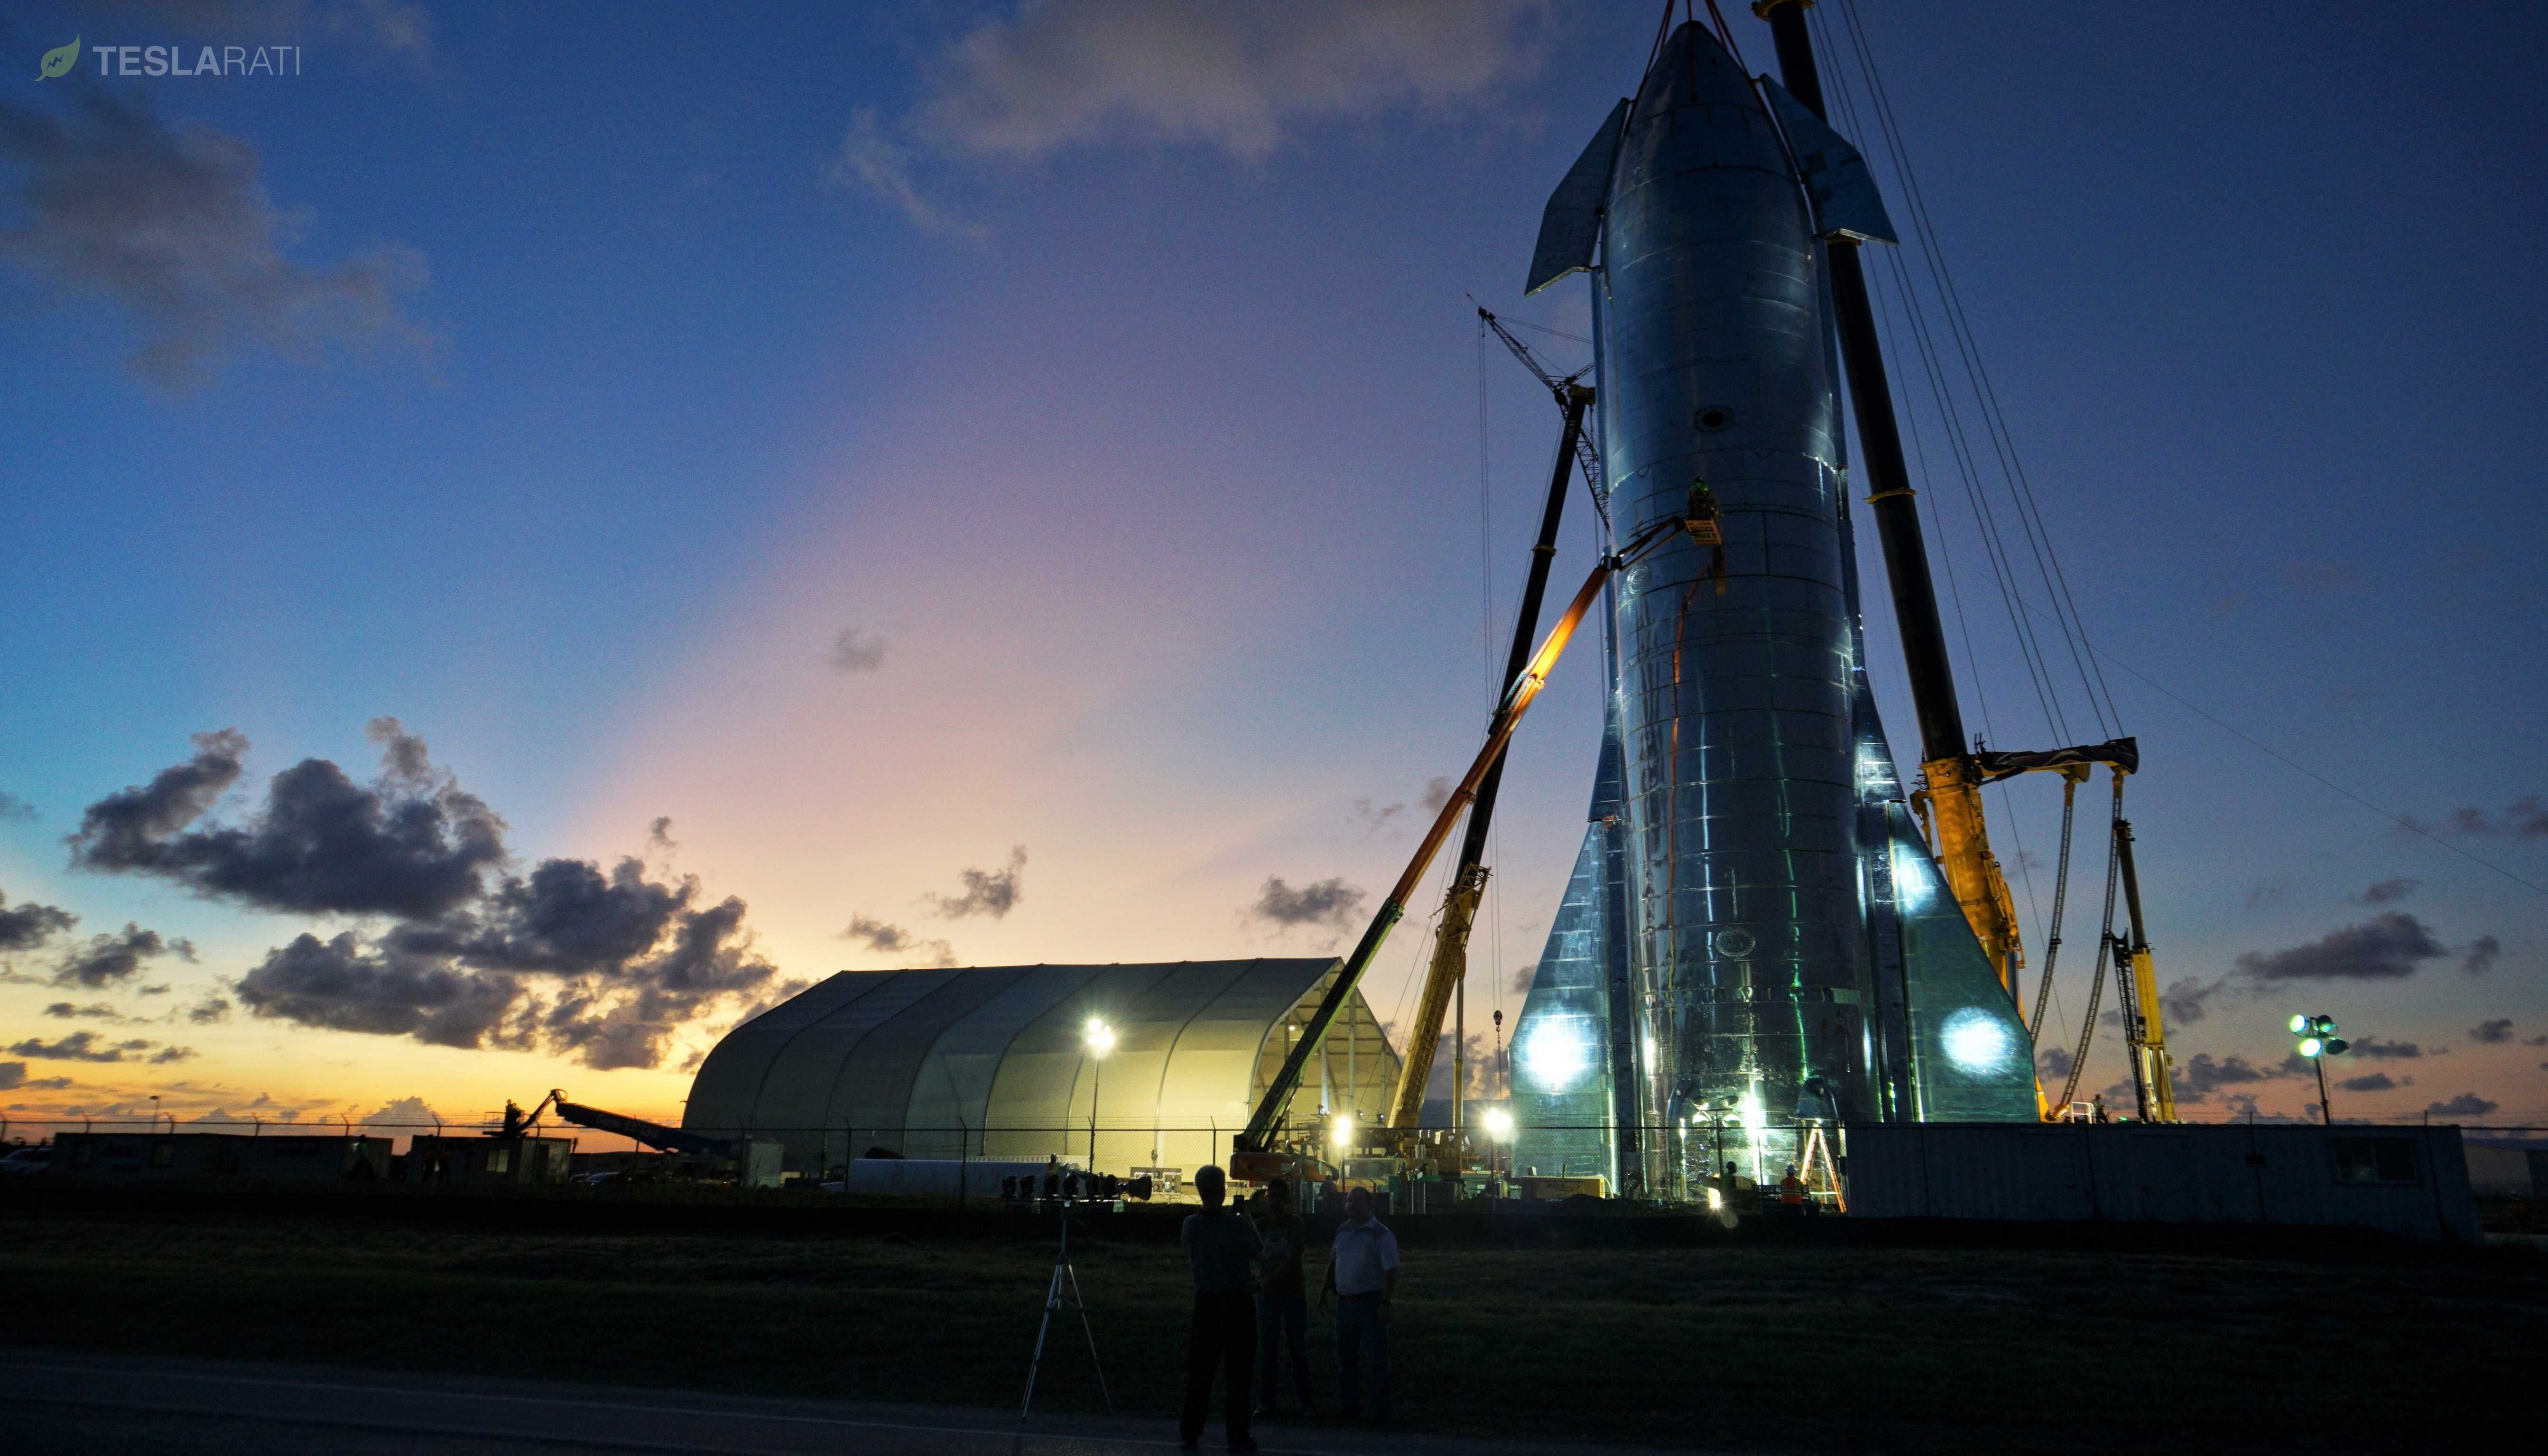 Σε έξι μήνες το Starship της SpaceX θα τεθεί σε τροχιά